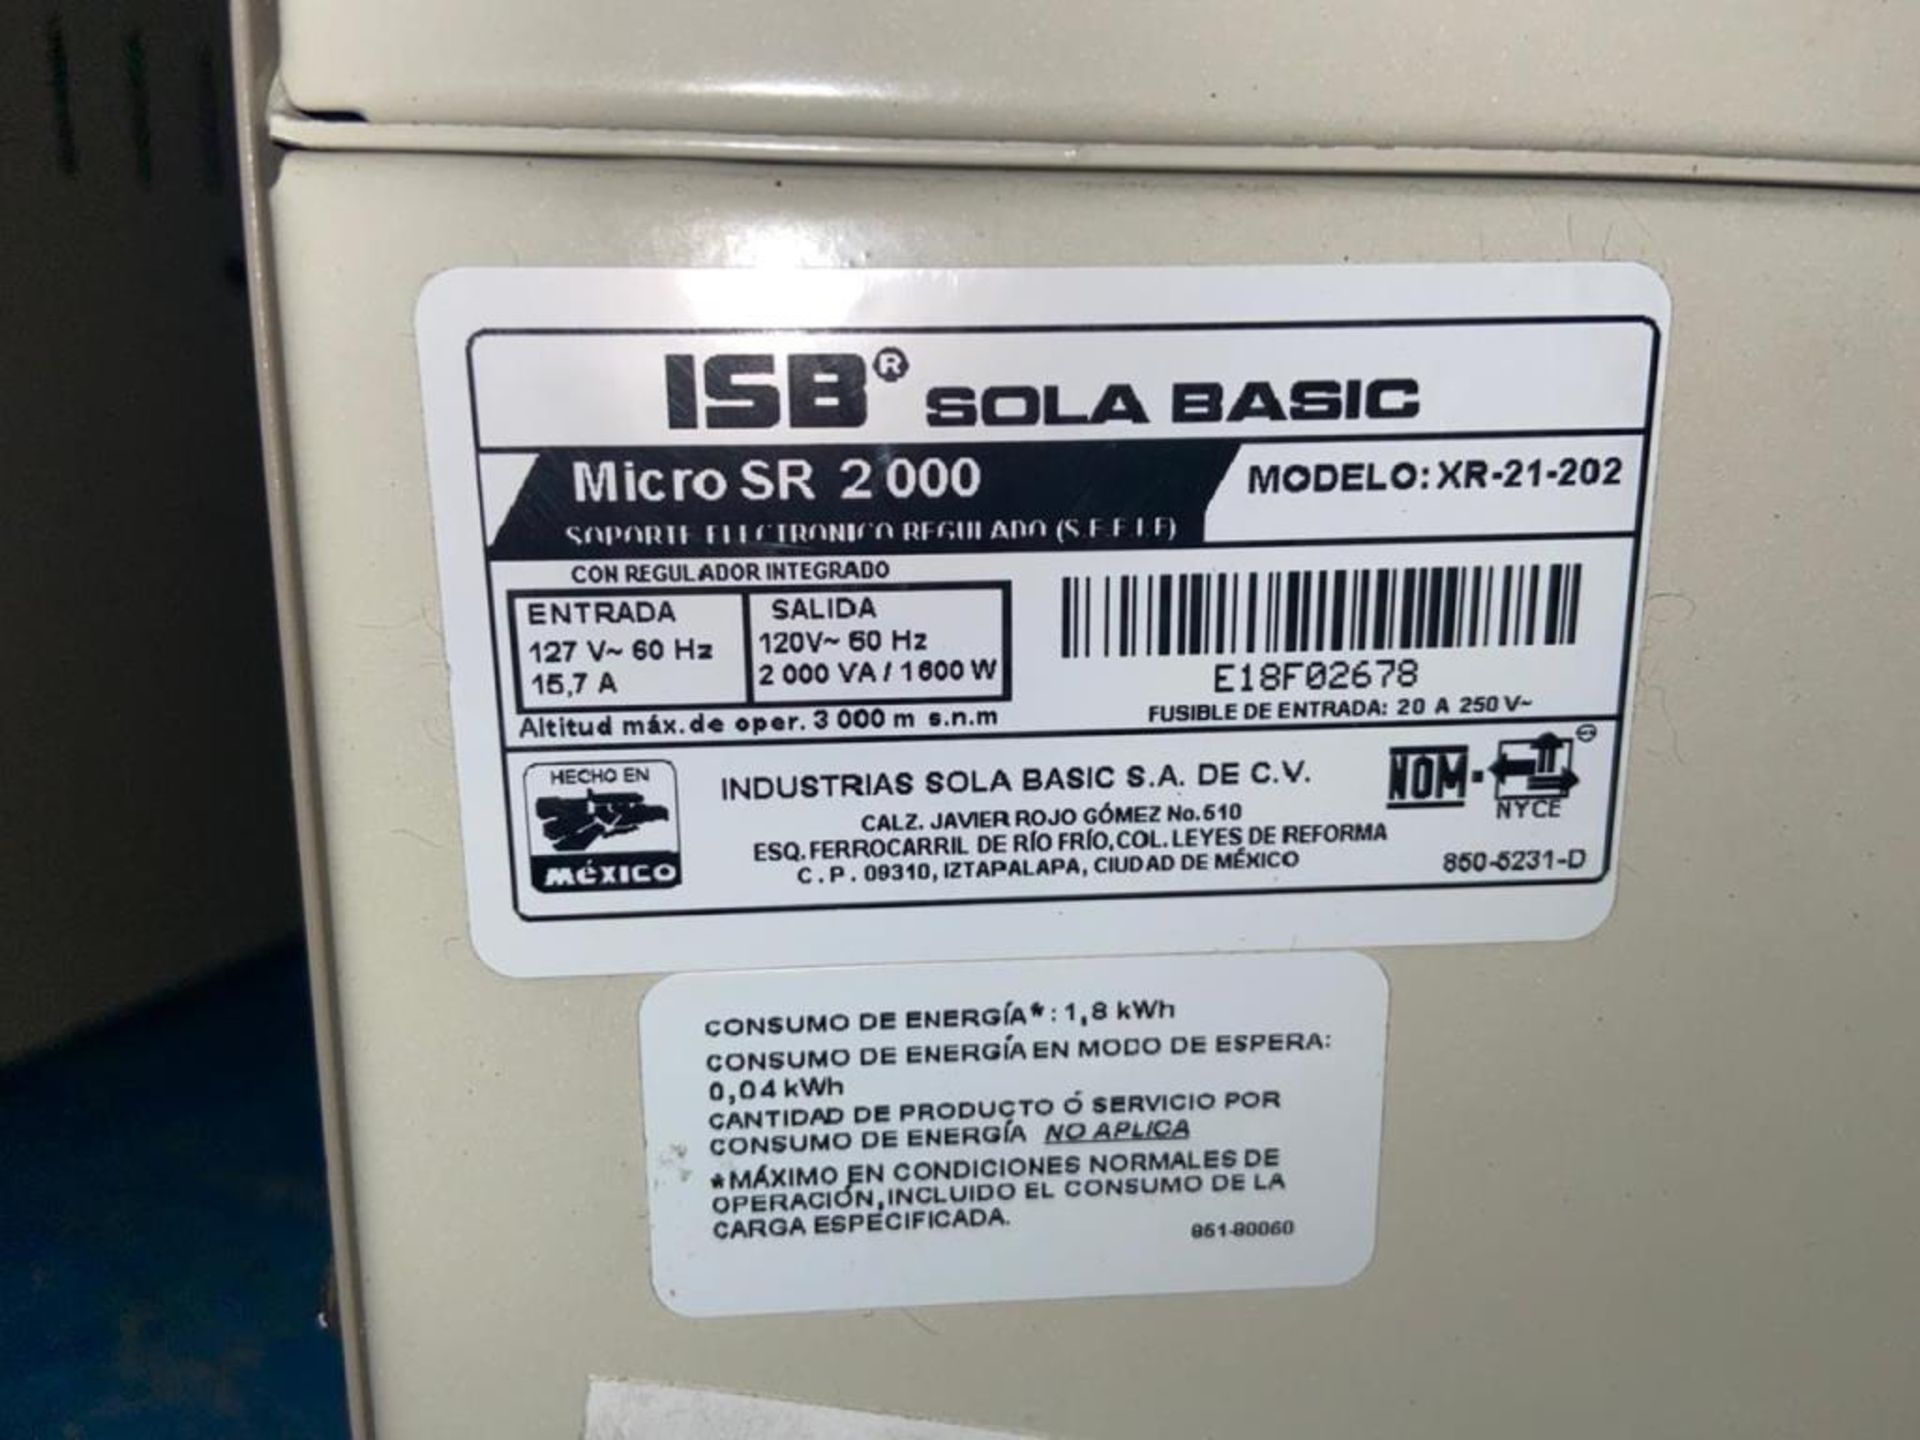 Dos reguladores de voltaje marca ISB Solabasic, modelo: XR-21-202, Series: E19C9837, E18F02678 - Image 5 of 10